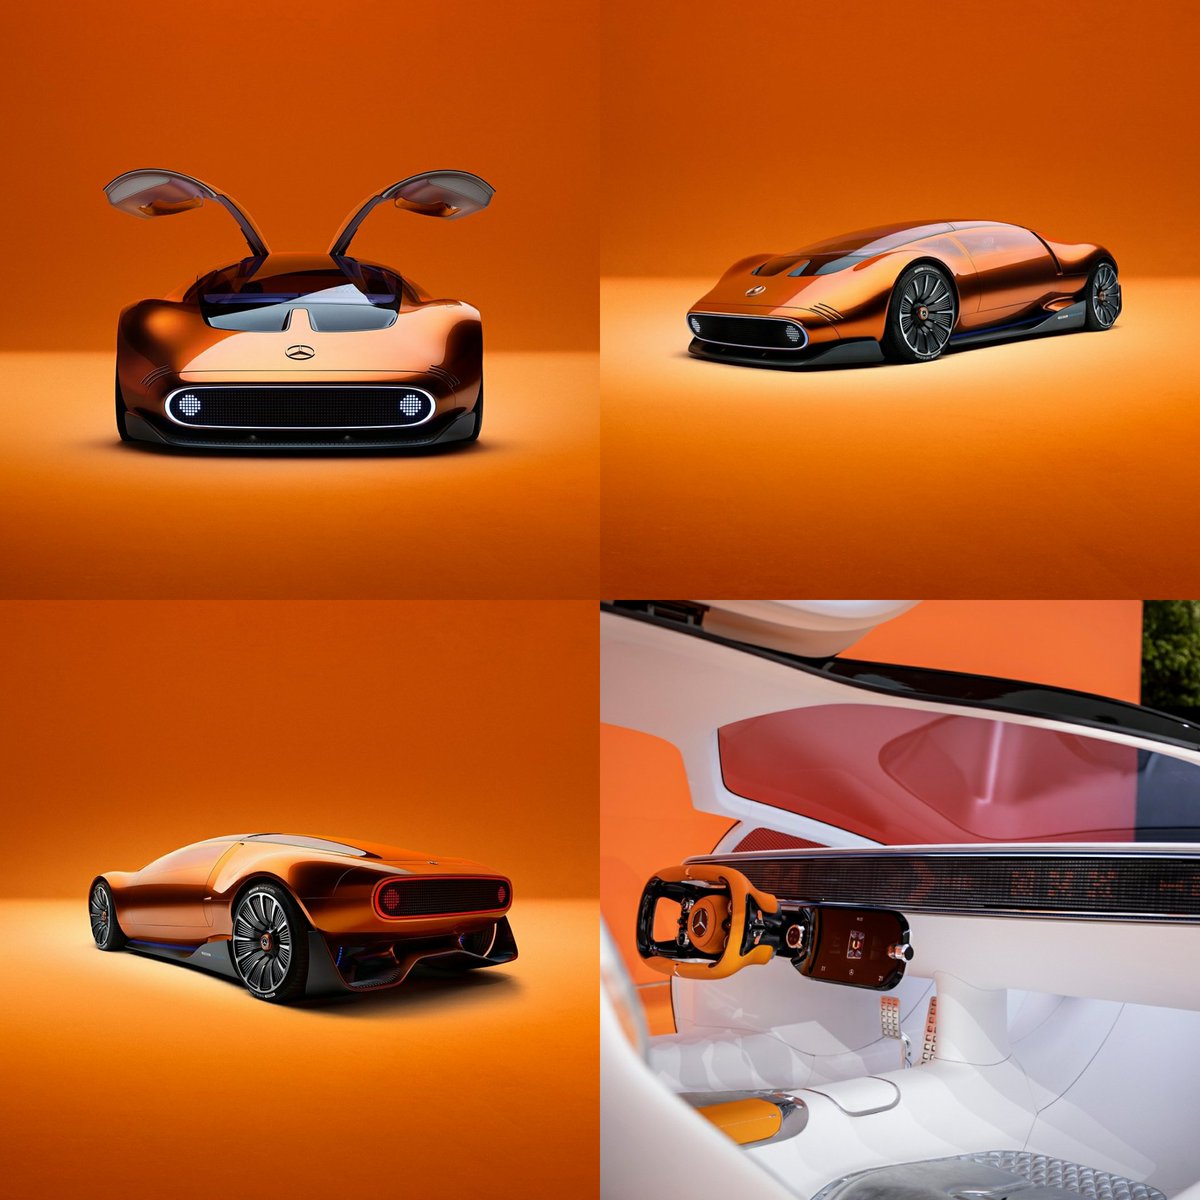 Mercedes, Bilim Kurgu filmlerinden fırlamış gibi görünen yeni konsept otomobili Vision One-Eleven'ı tanıttı.